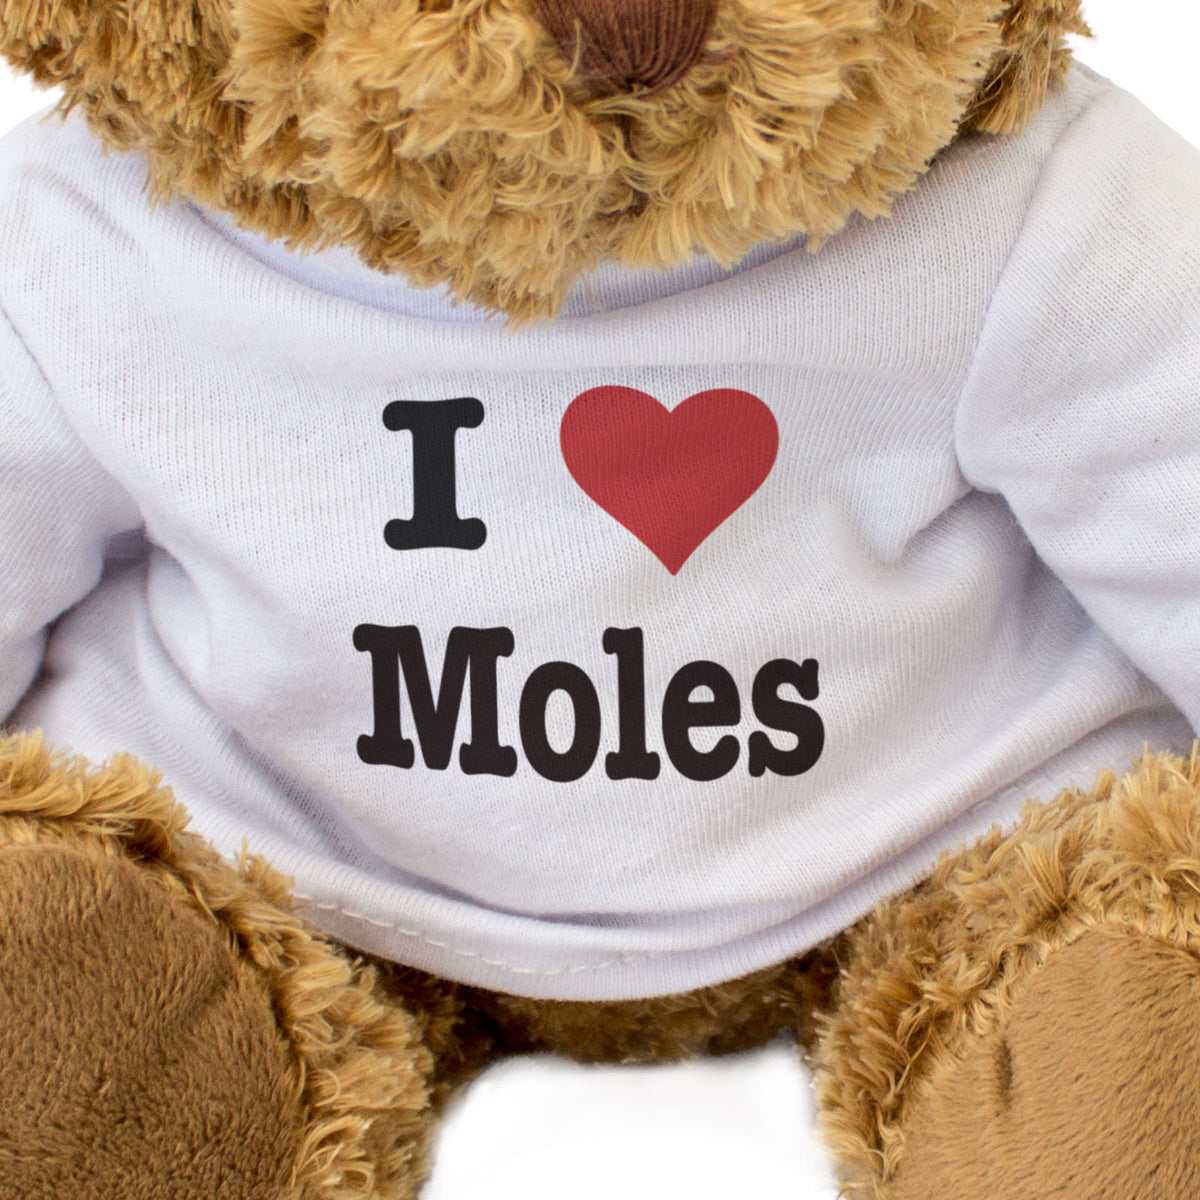 I Love Moles - Teddy Bear